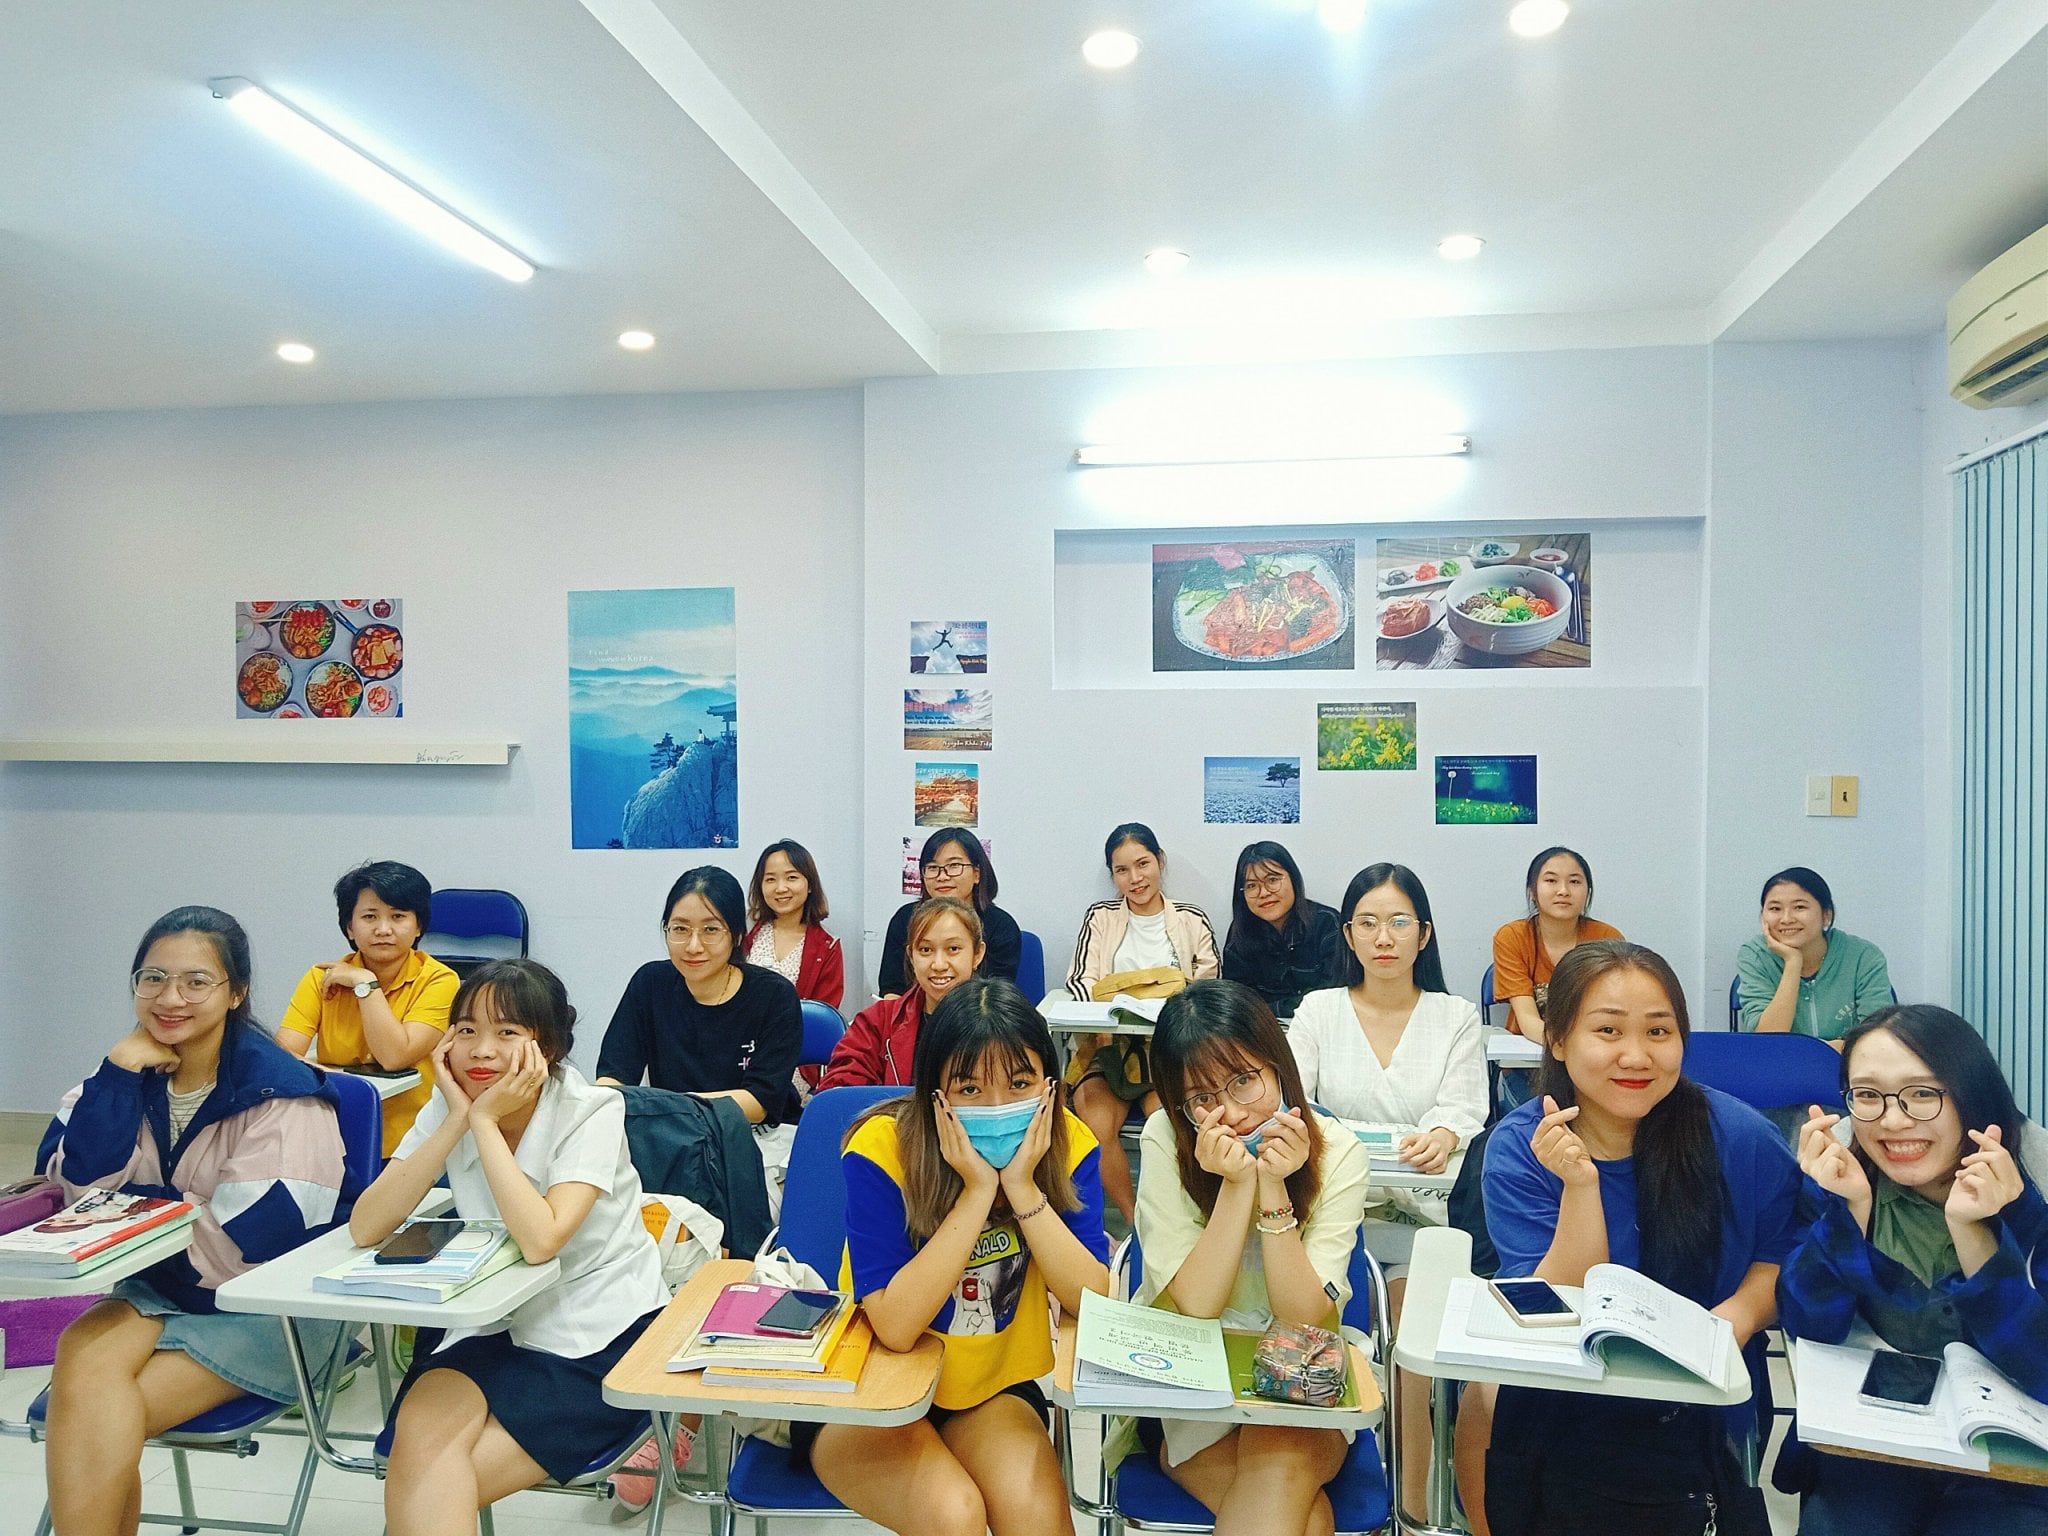 Trường Hàn Ngữ Việt Hàn Kanata ảnh 1